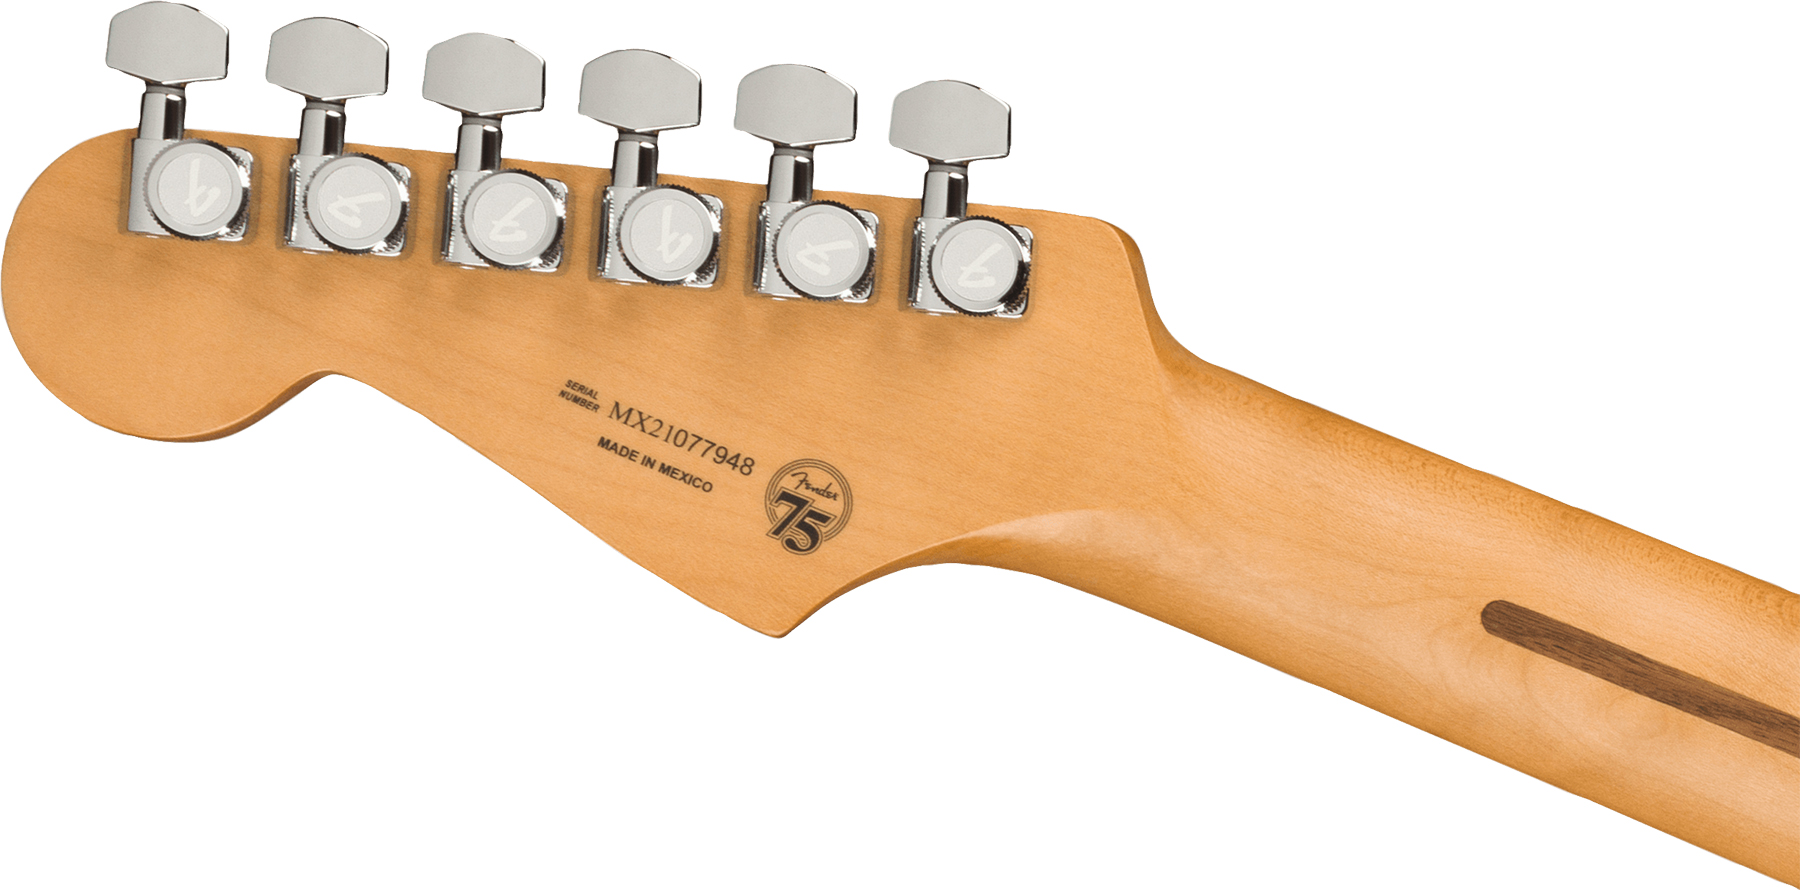 Fender Strat Player Plus Lh Mex Gaucher 3s Trem Mn - Olympic Pearl - Linkshandige elektrische gitaar - Variation 3